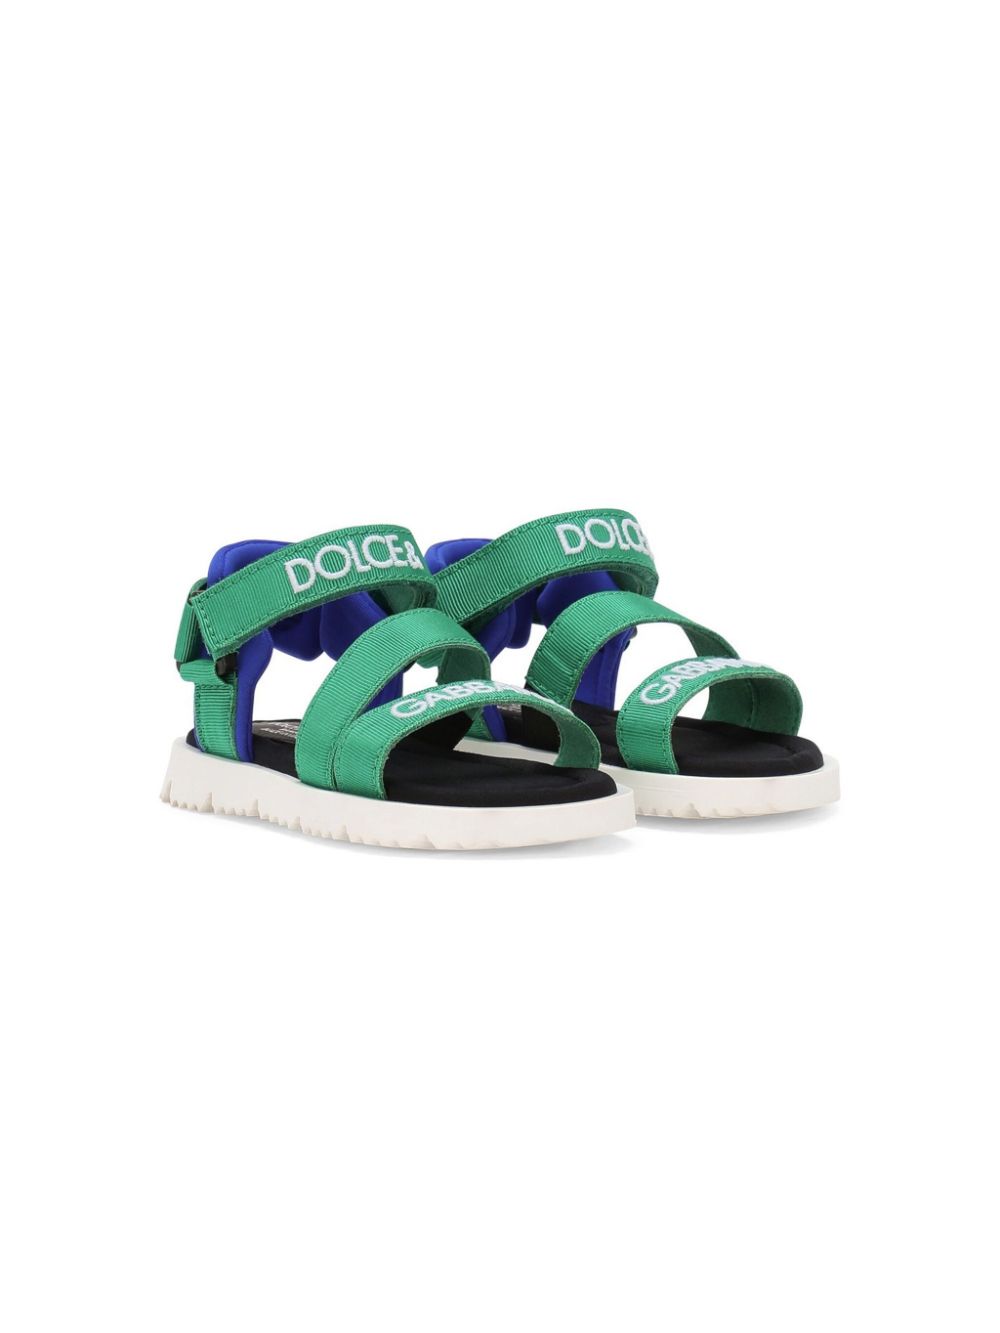 Dolce & Gabbana Kids branded grosgrain sandals - Green von Dolce & Gabbana Kids